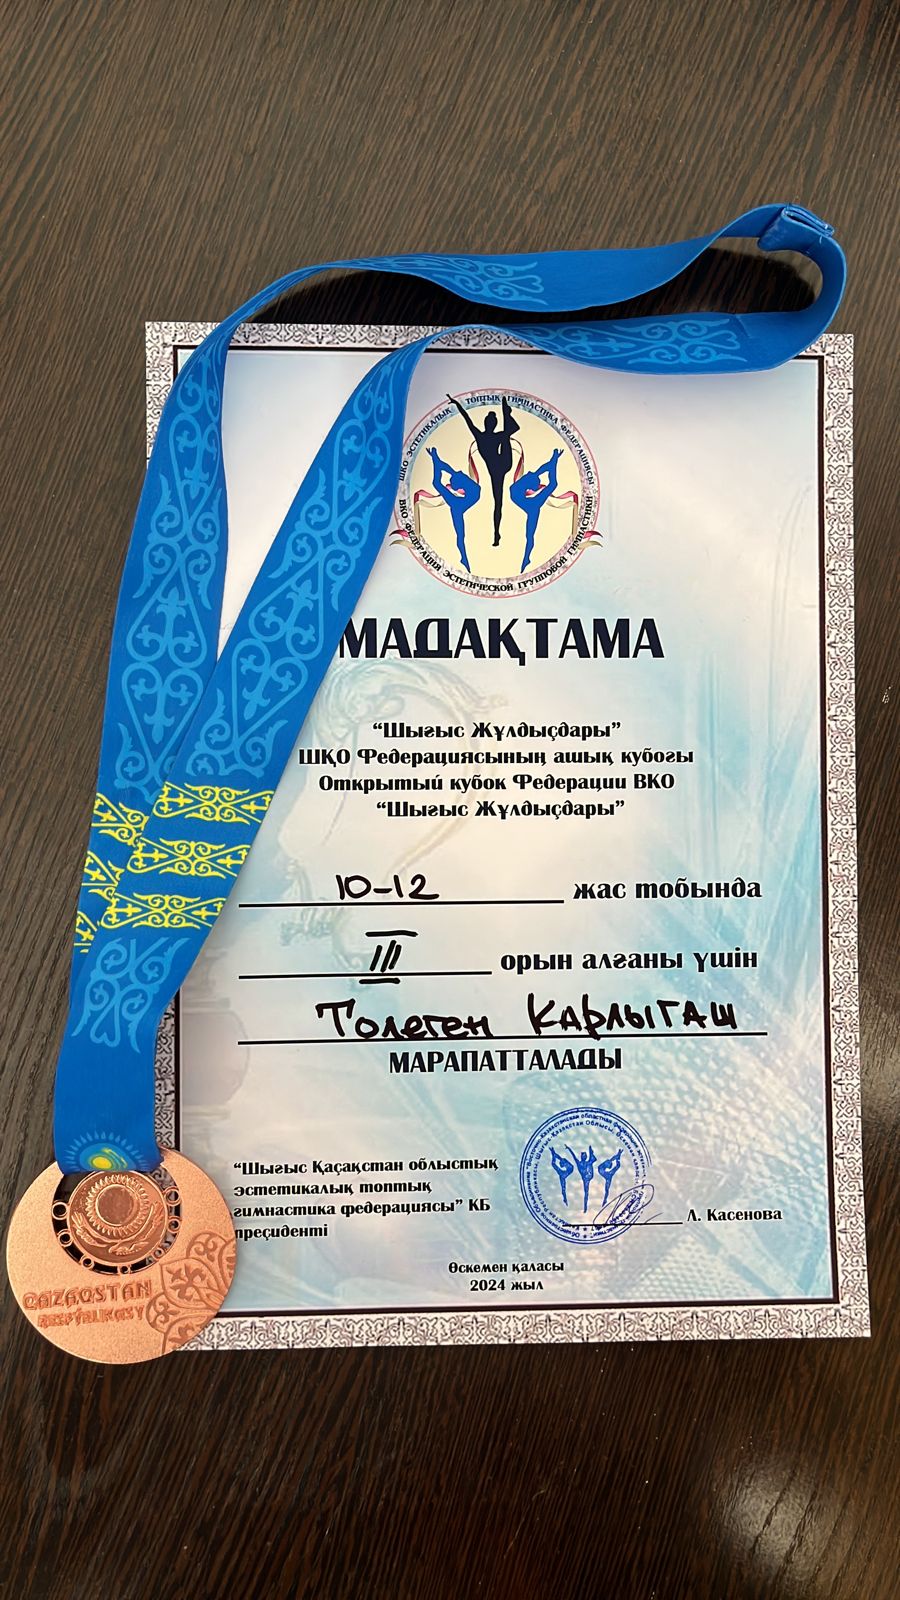 Төлеген Қарлығаш гимнастикадан өткен «Шығыс жұлдыздары» атты ШҚО Федерациясының ашық турнирінде жүлделі 3-орын иеленді.